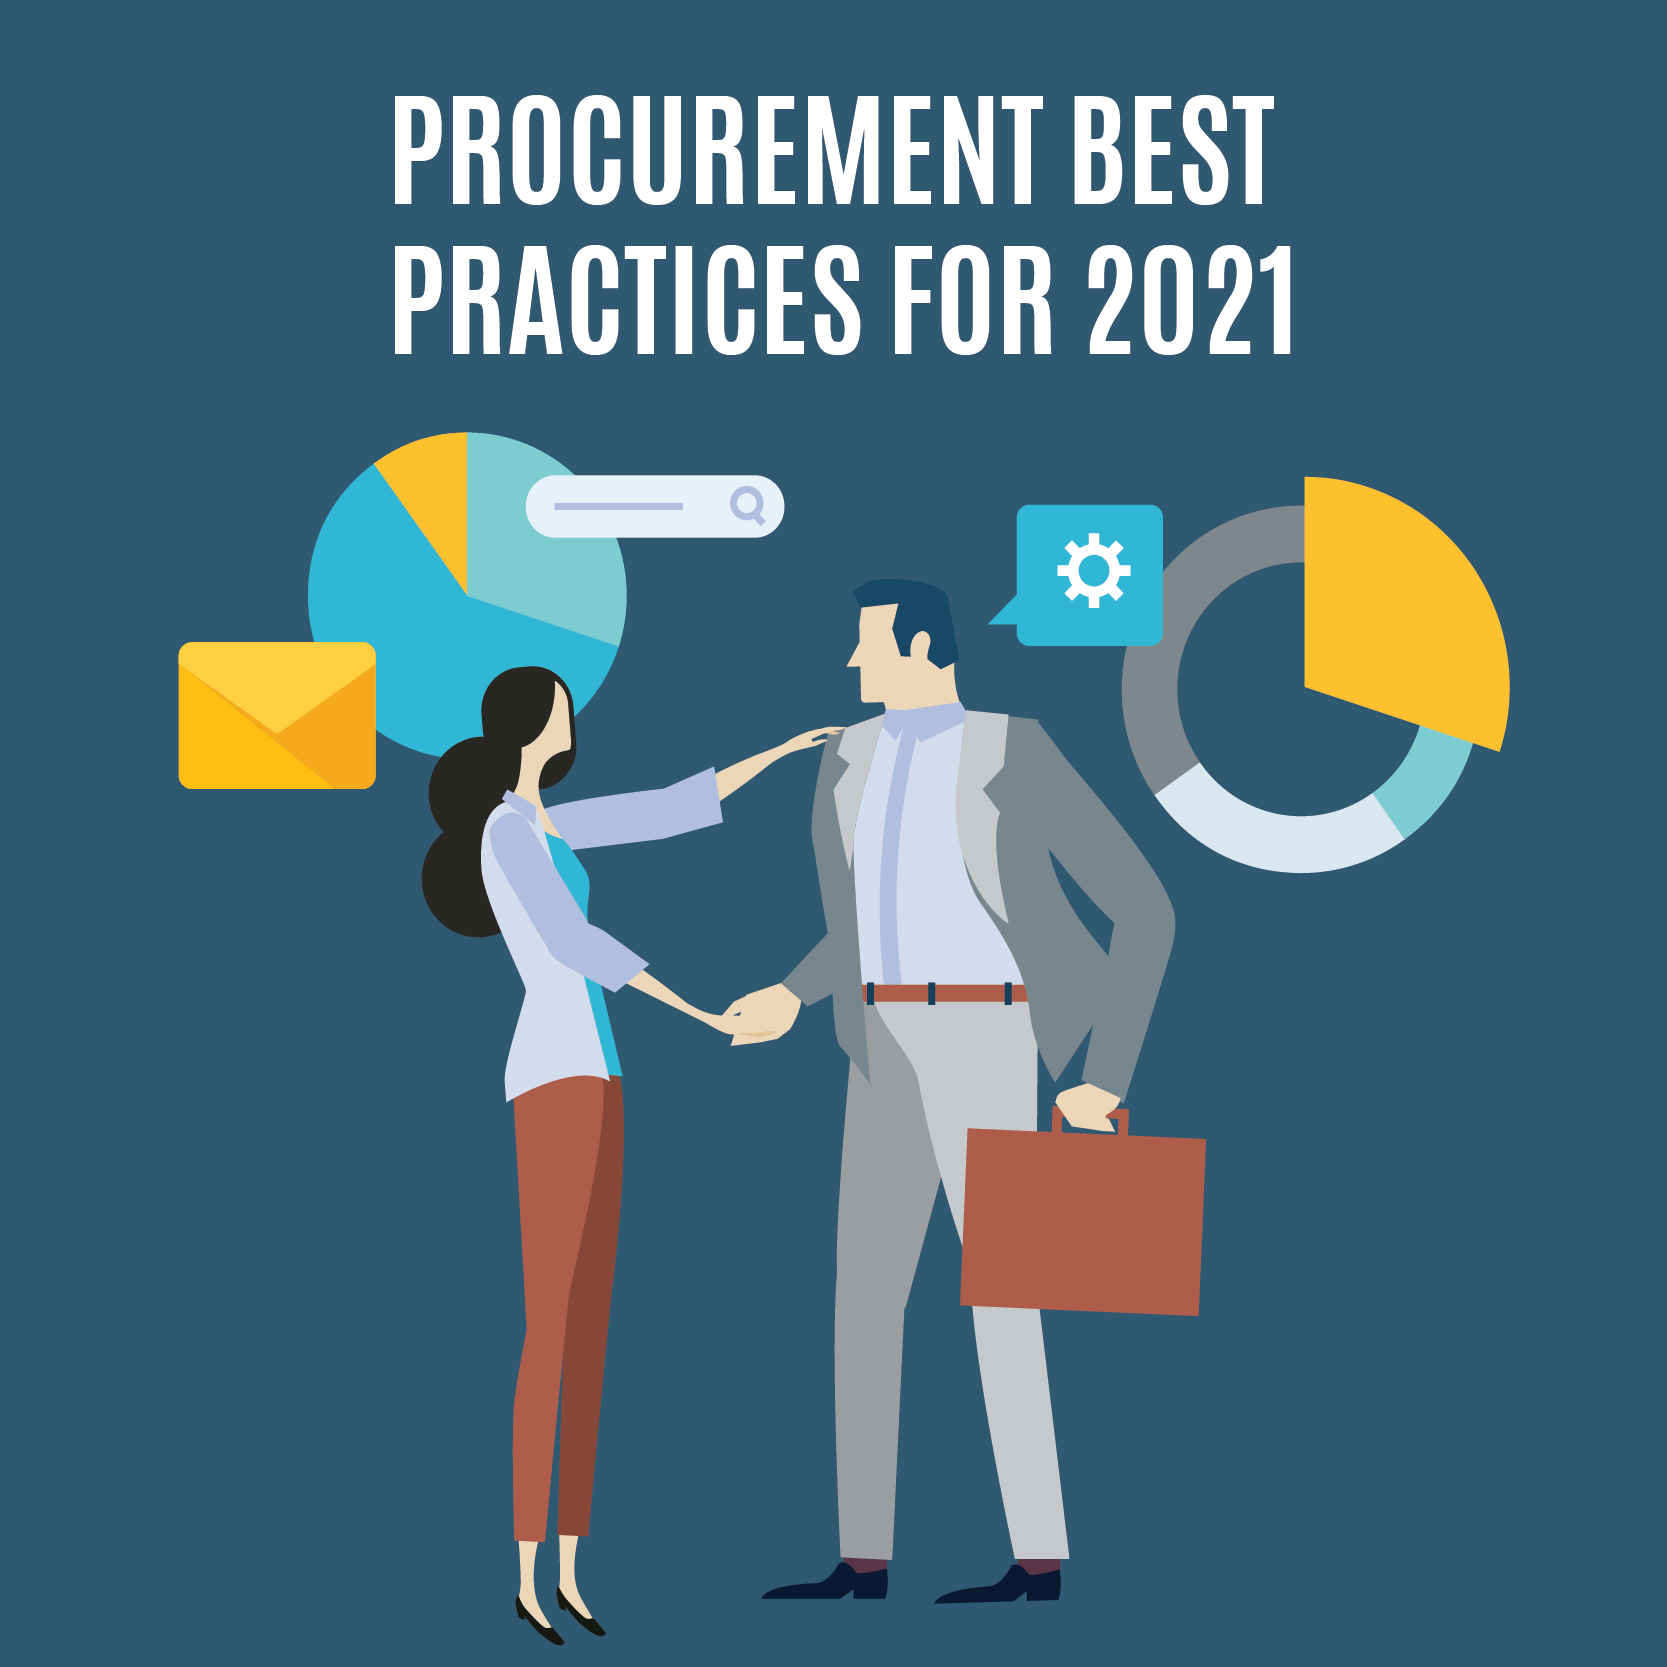 Procurement best practices